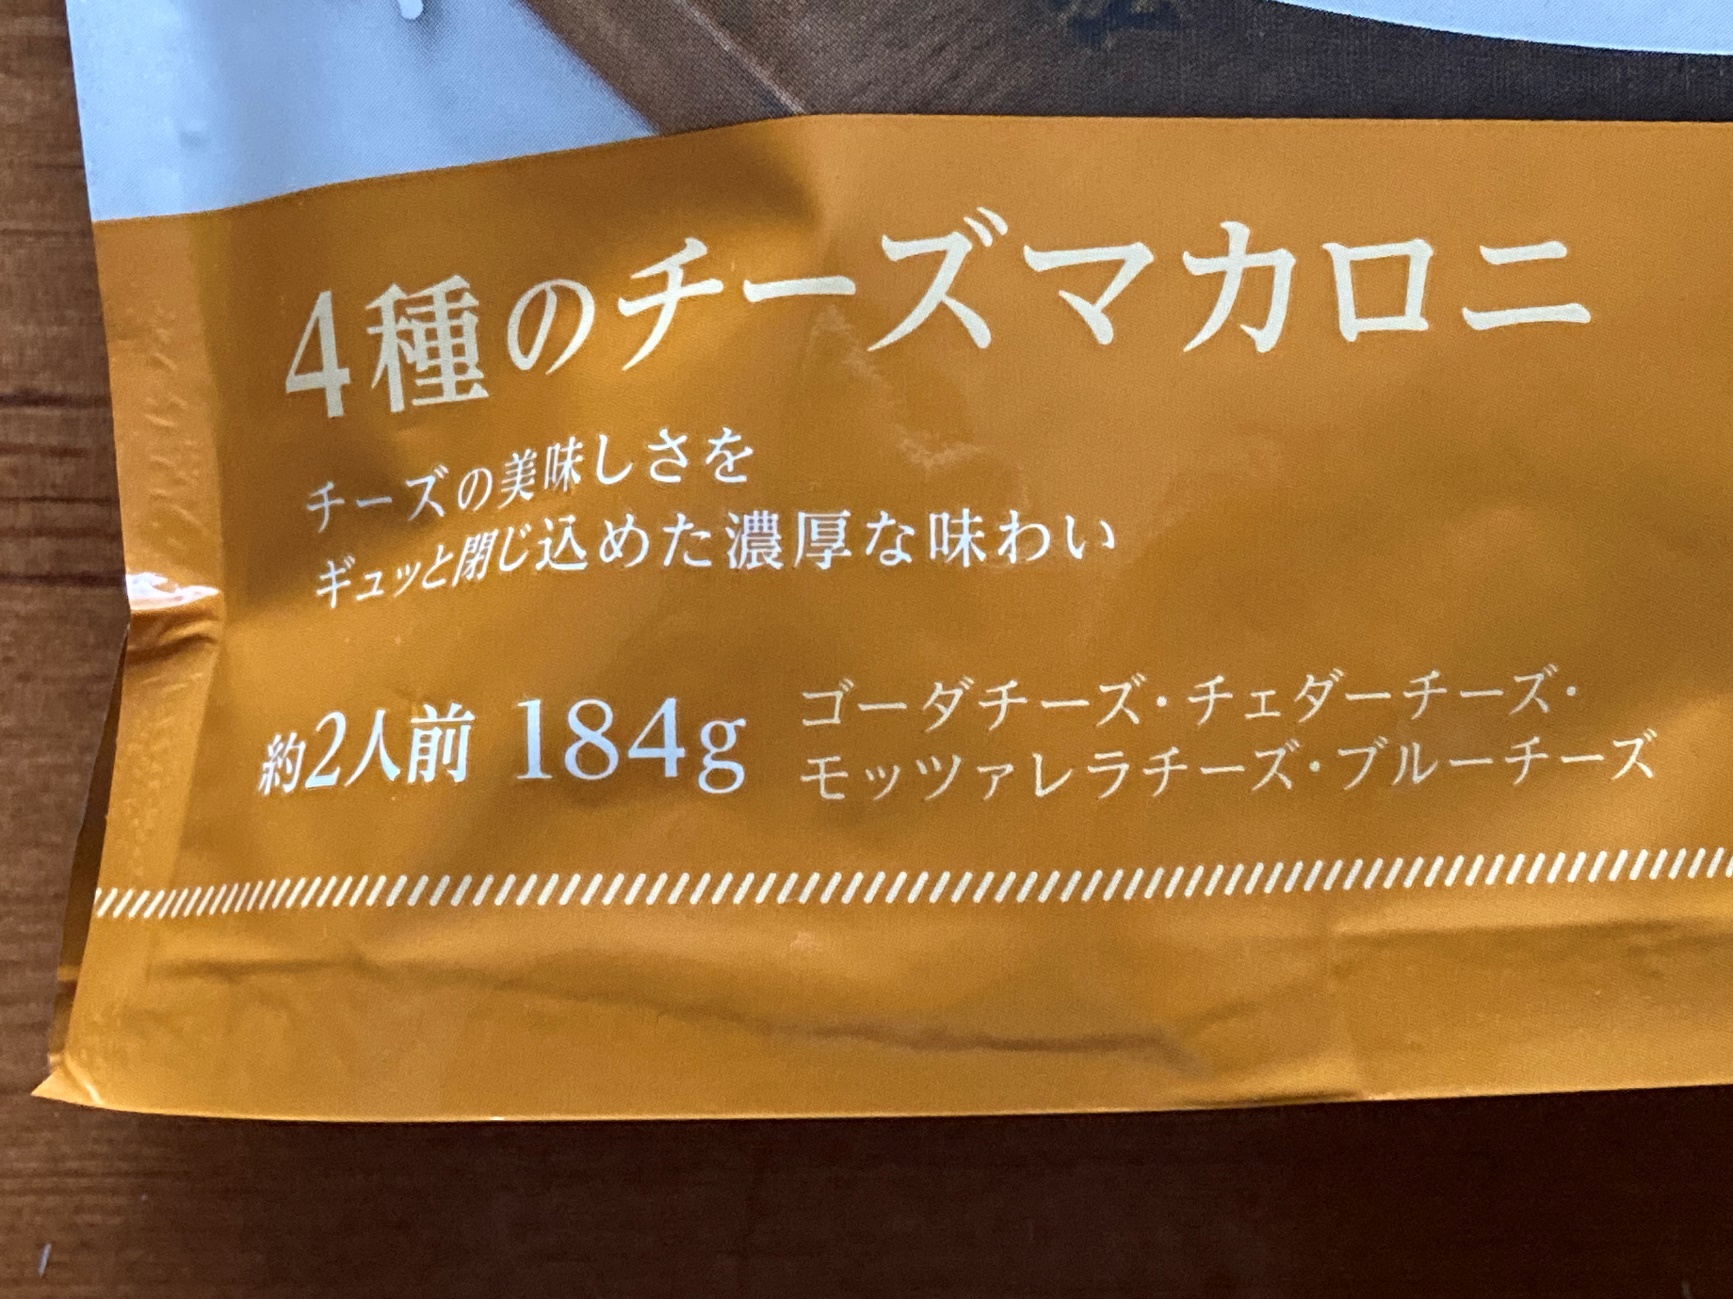 業務スーパーの「4種のチーズマカロニ」パッケージにある内容量約2人前184gの表記